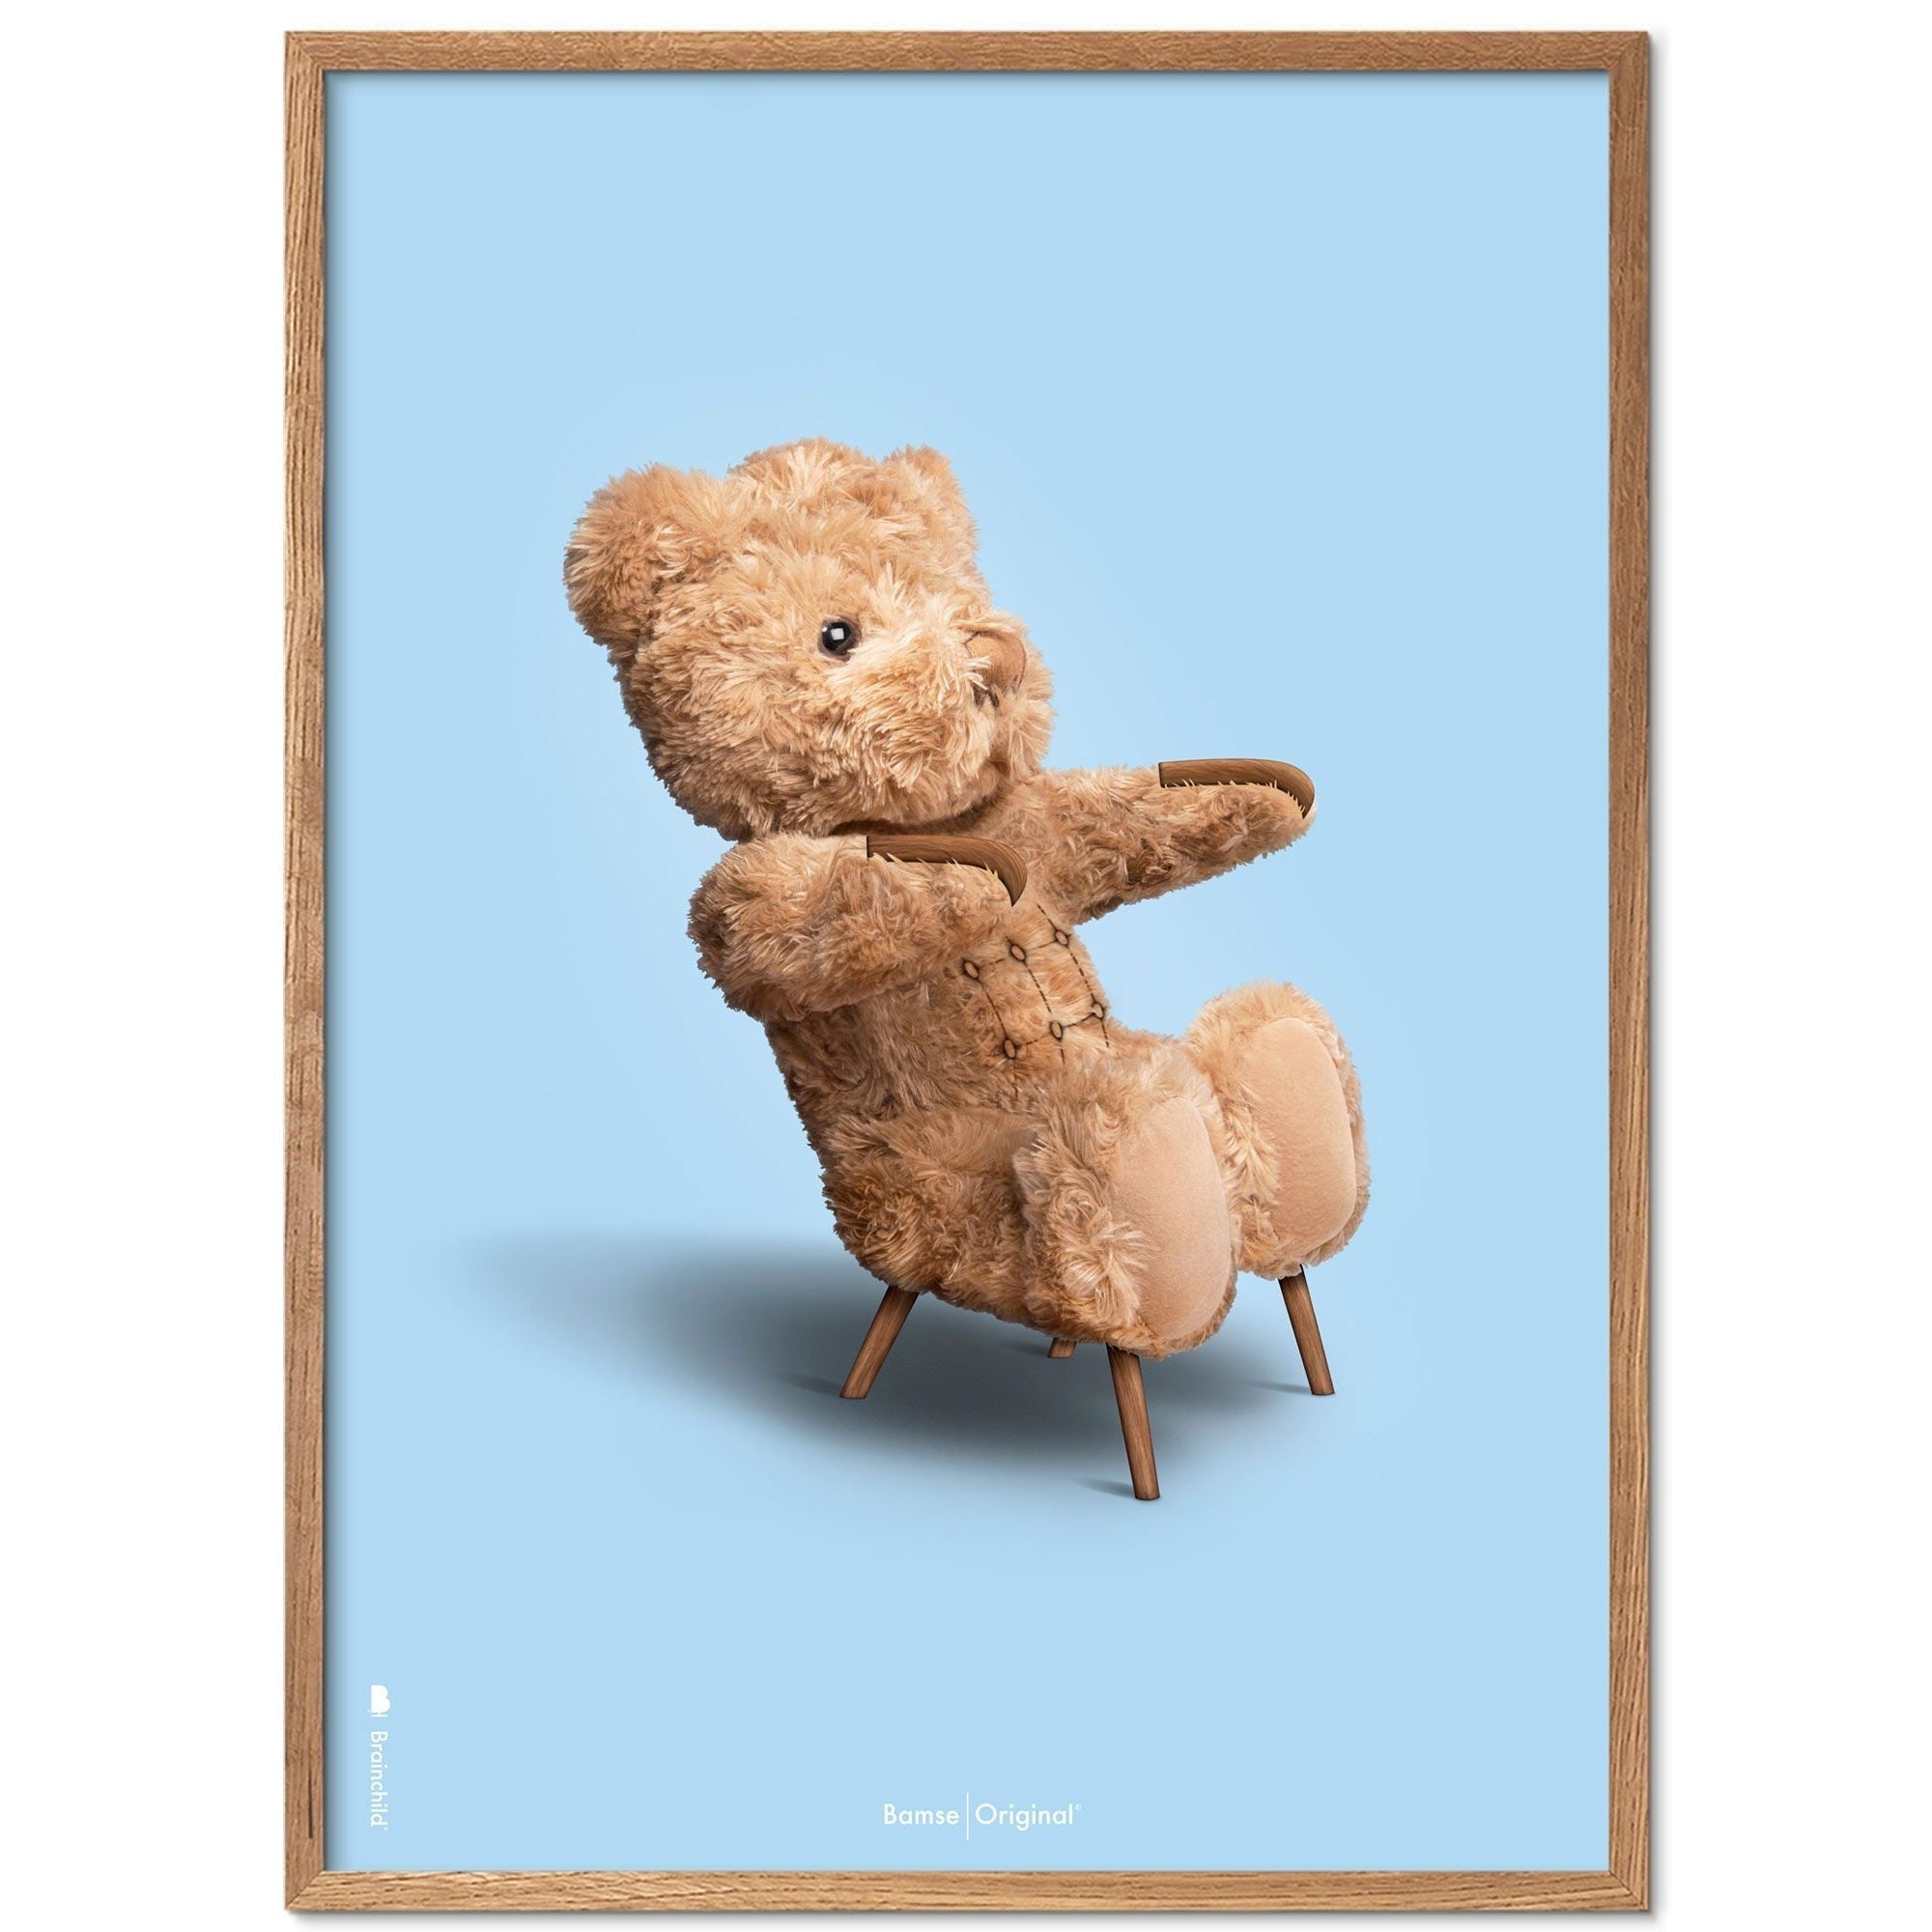 Brainchild Teddy Bear Classic plakát z plakátu vyrobený z světla dřeva 30x40 cm, světle modré pozadí